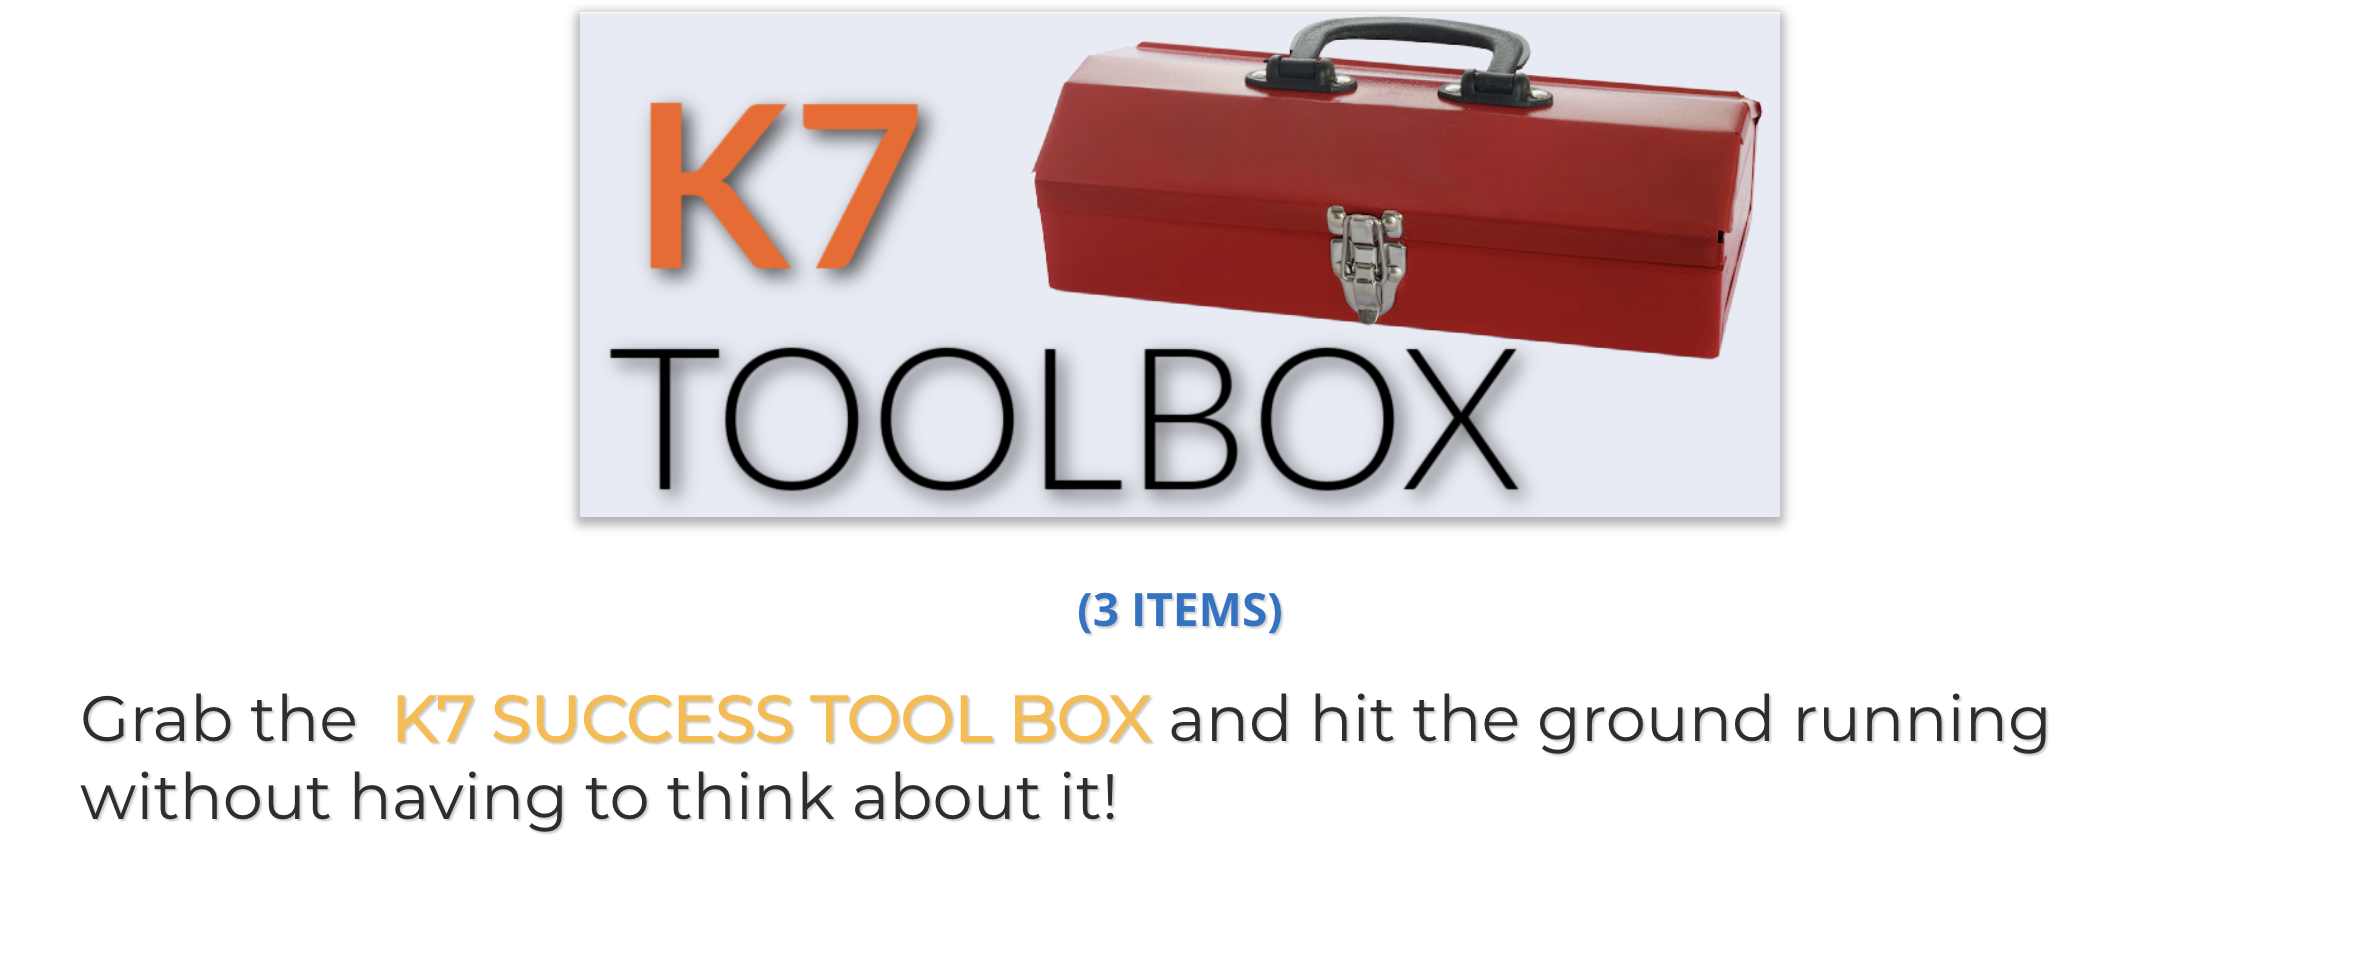 K7 Tool Box